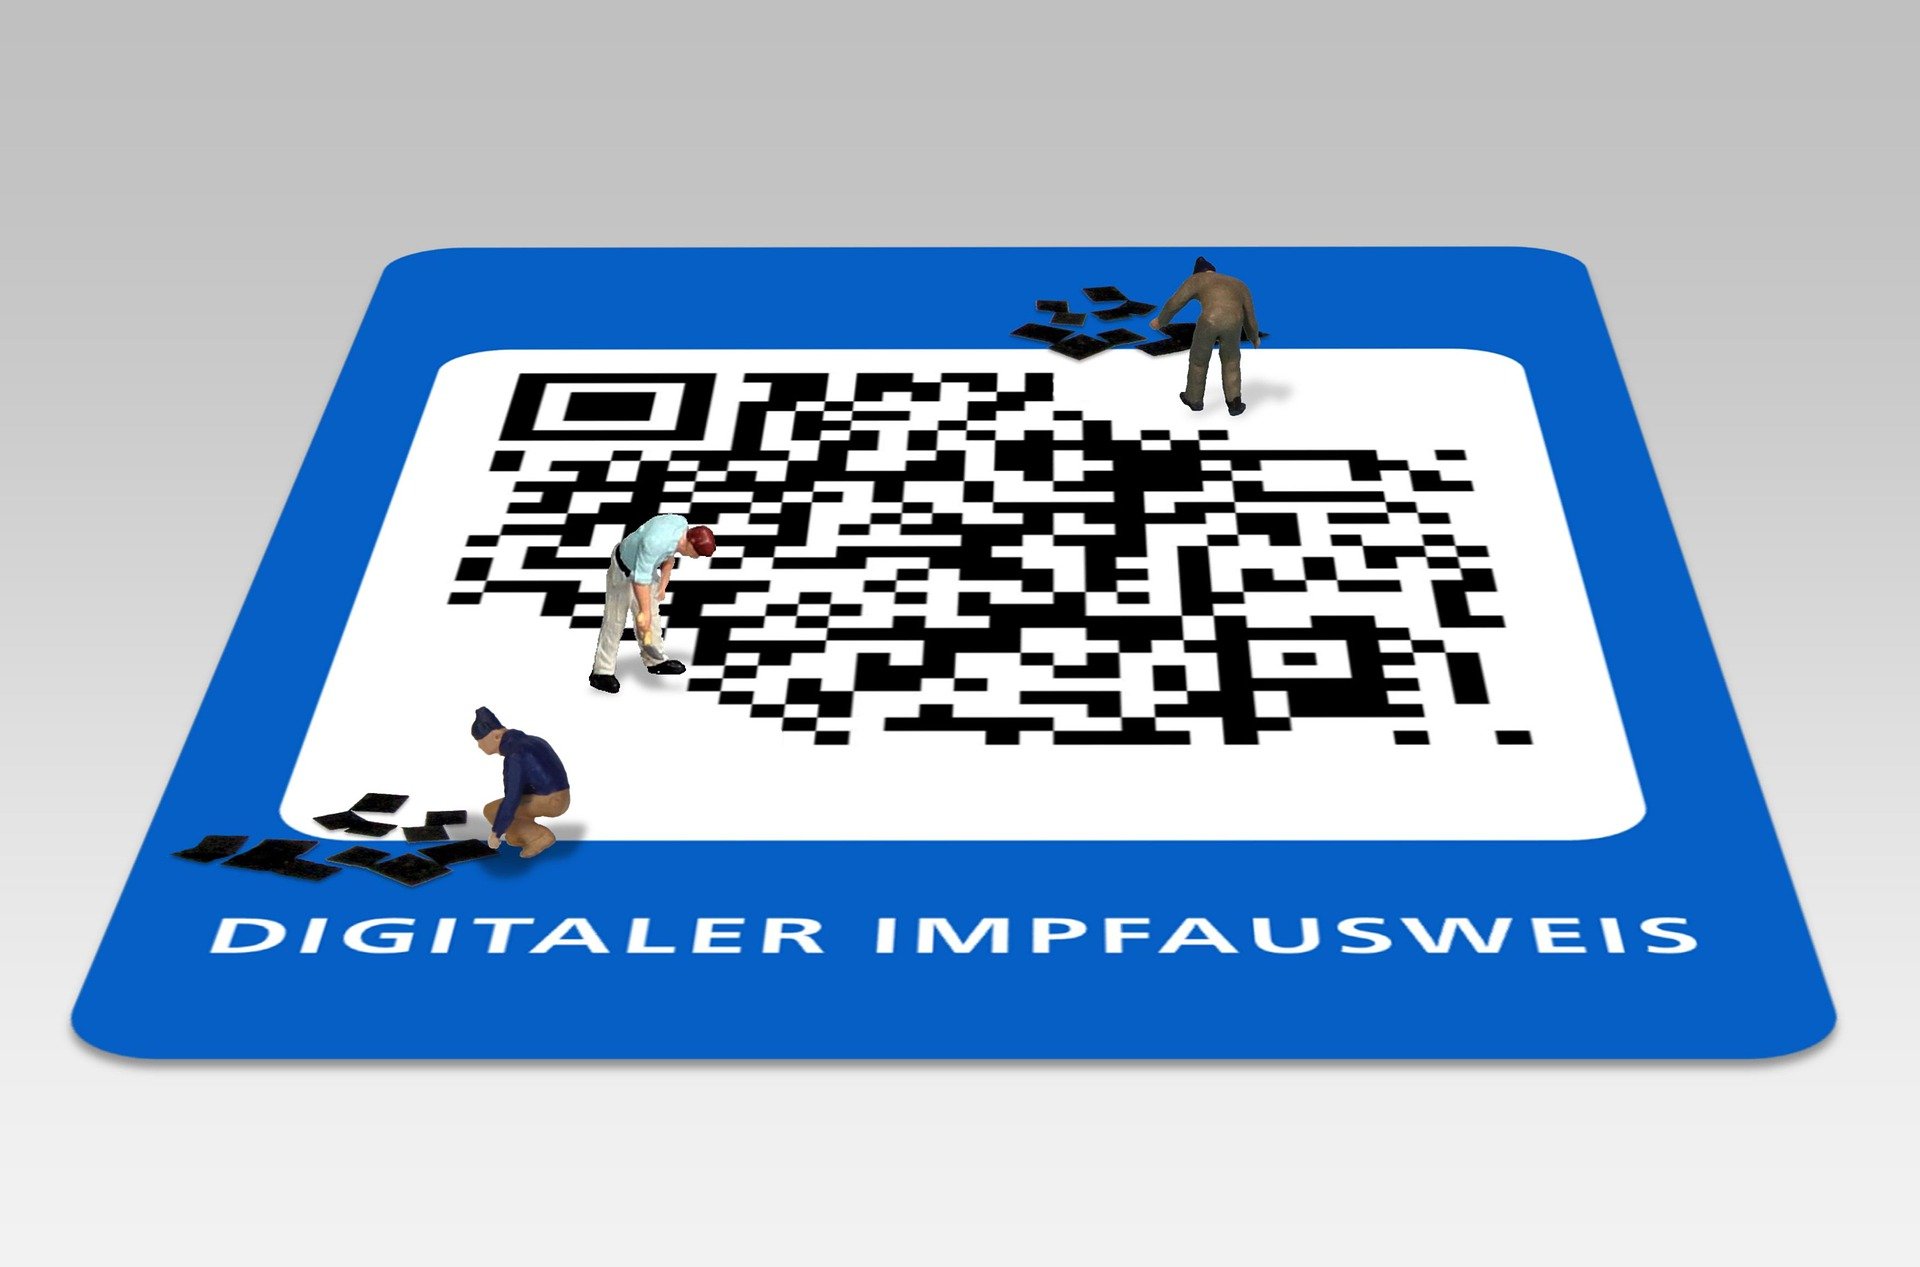 Digitaler_Impfausweis